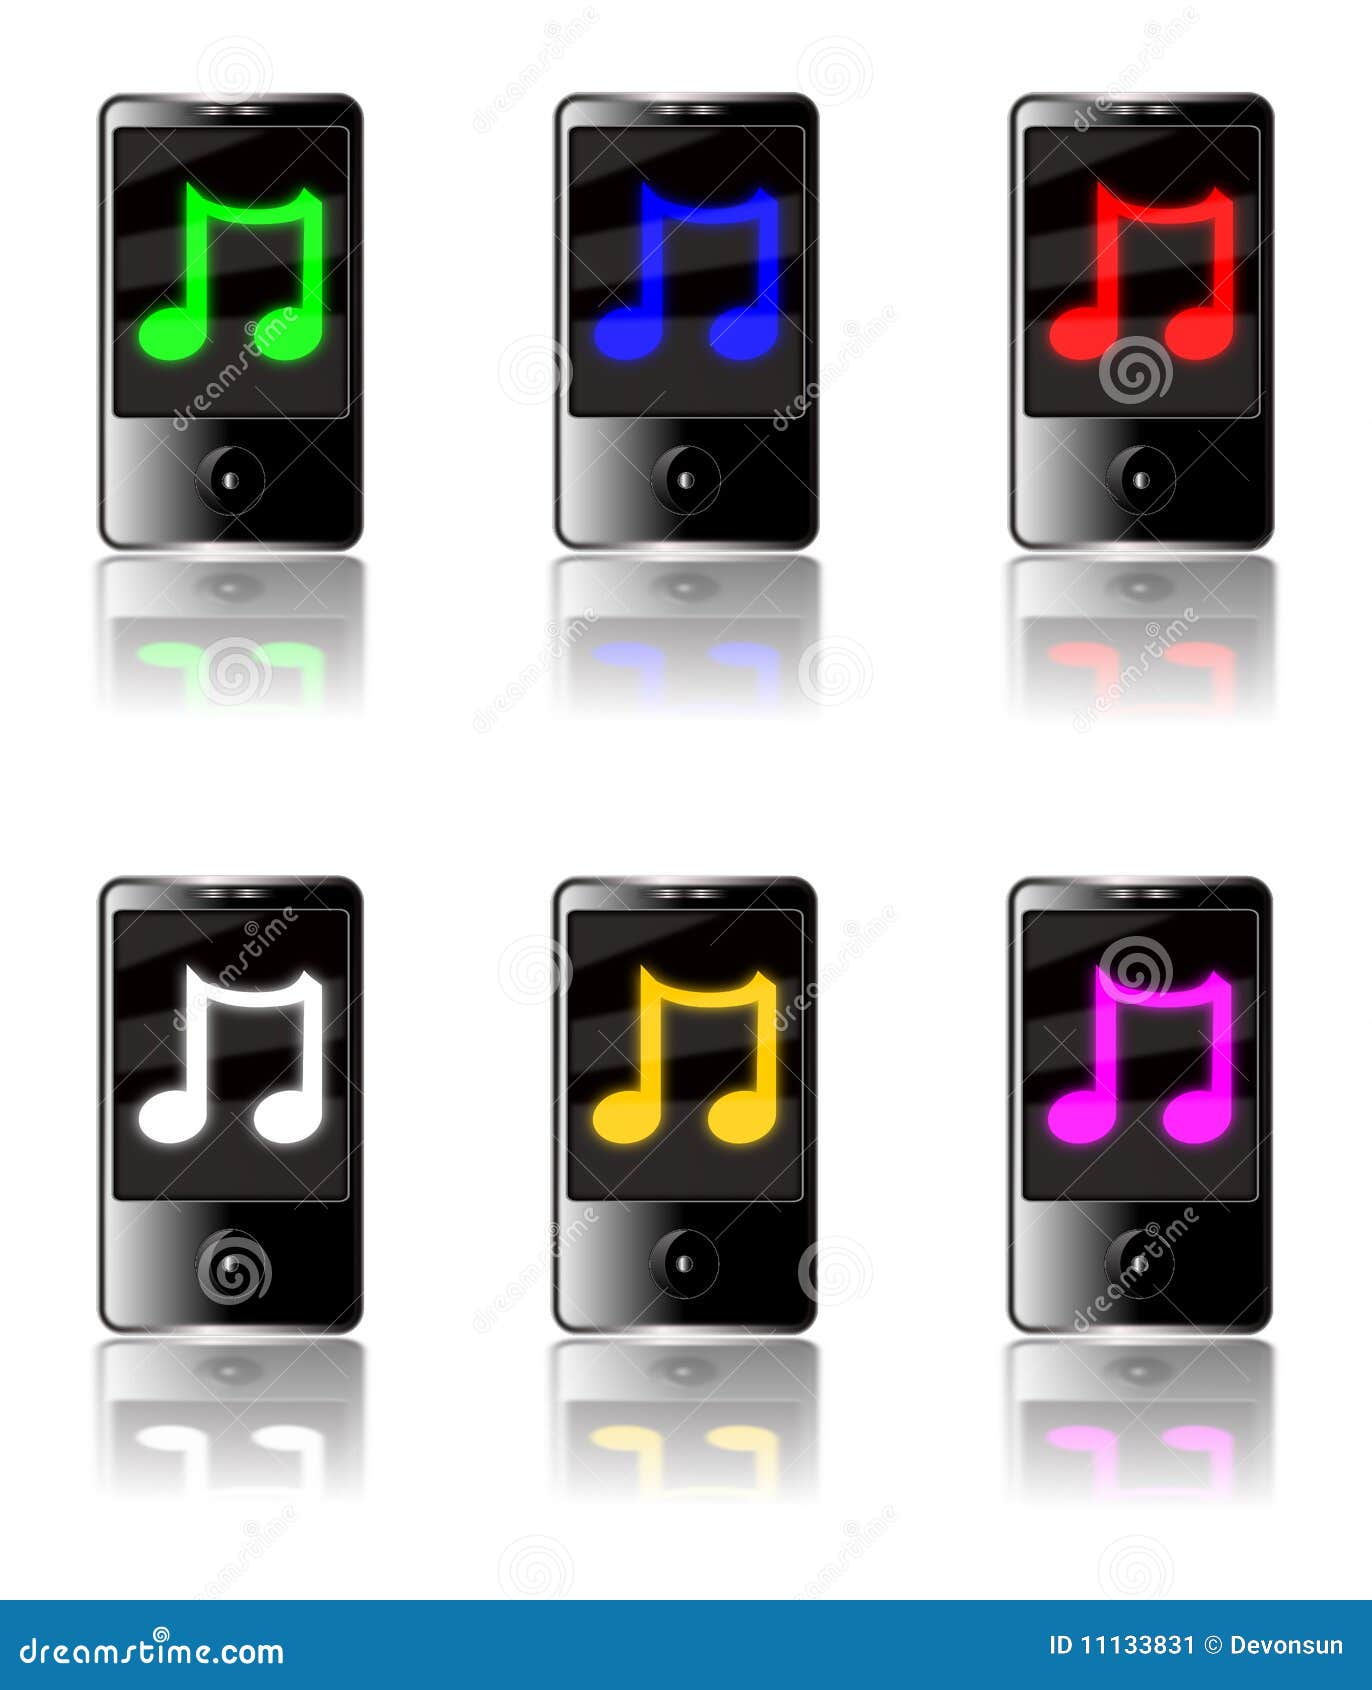 MP3-Player-Musik-Set. Abbildung von sechs generischen Touch Screen MP3-Spielern getrennt auf einem weißen Hintergrund mit einem leuchtenden Symbol der musikalischen Anmerkung auf jedem Bildschirm in den verschiedenen Farben mit Reflexionen unten.